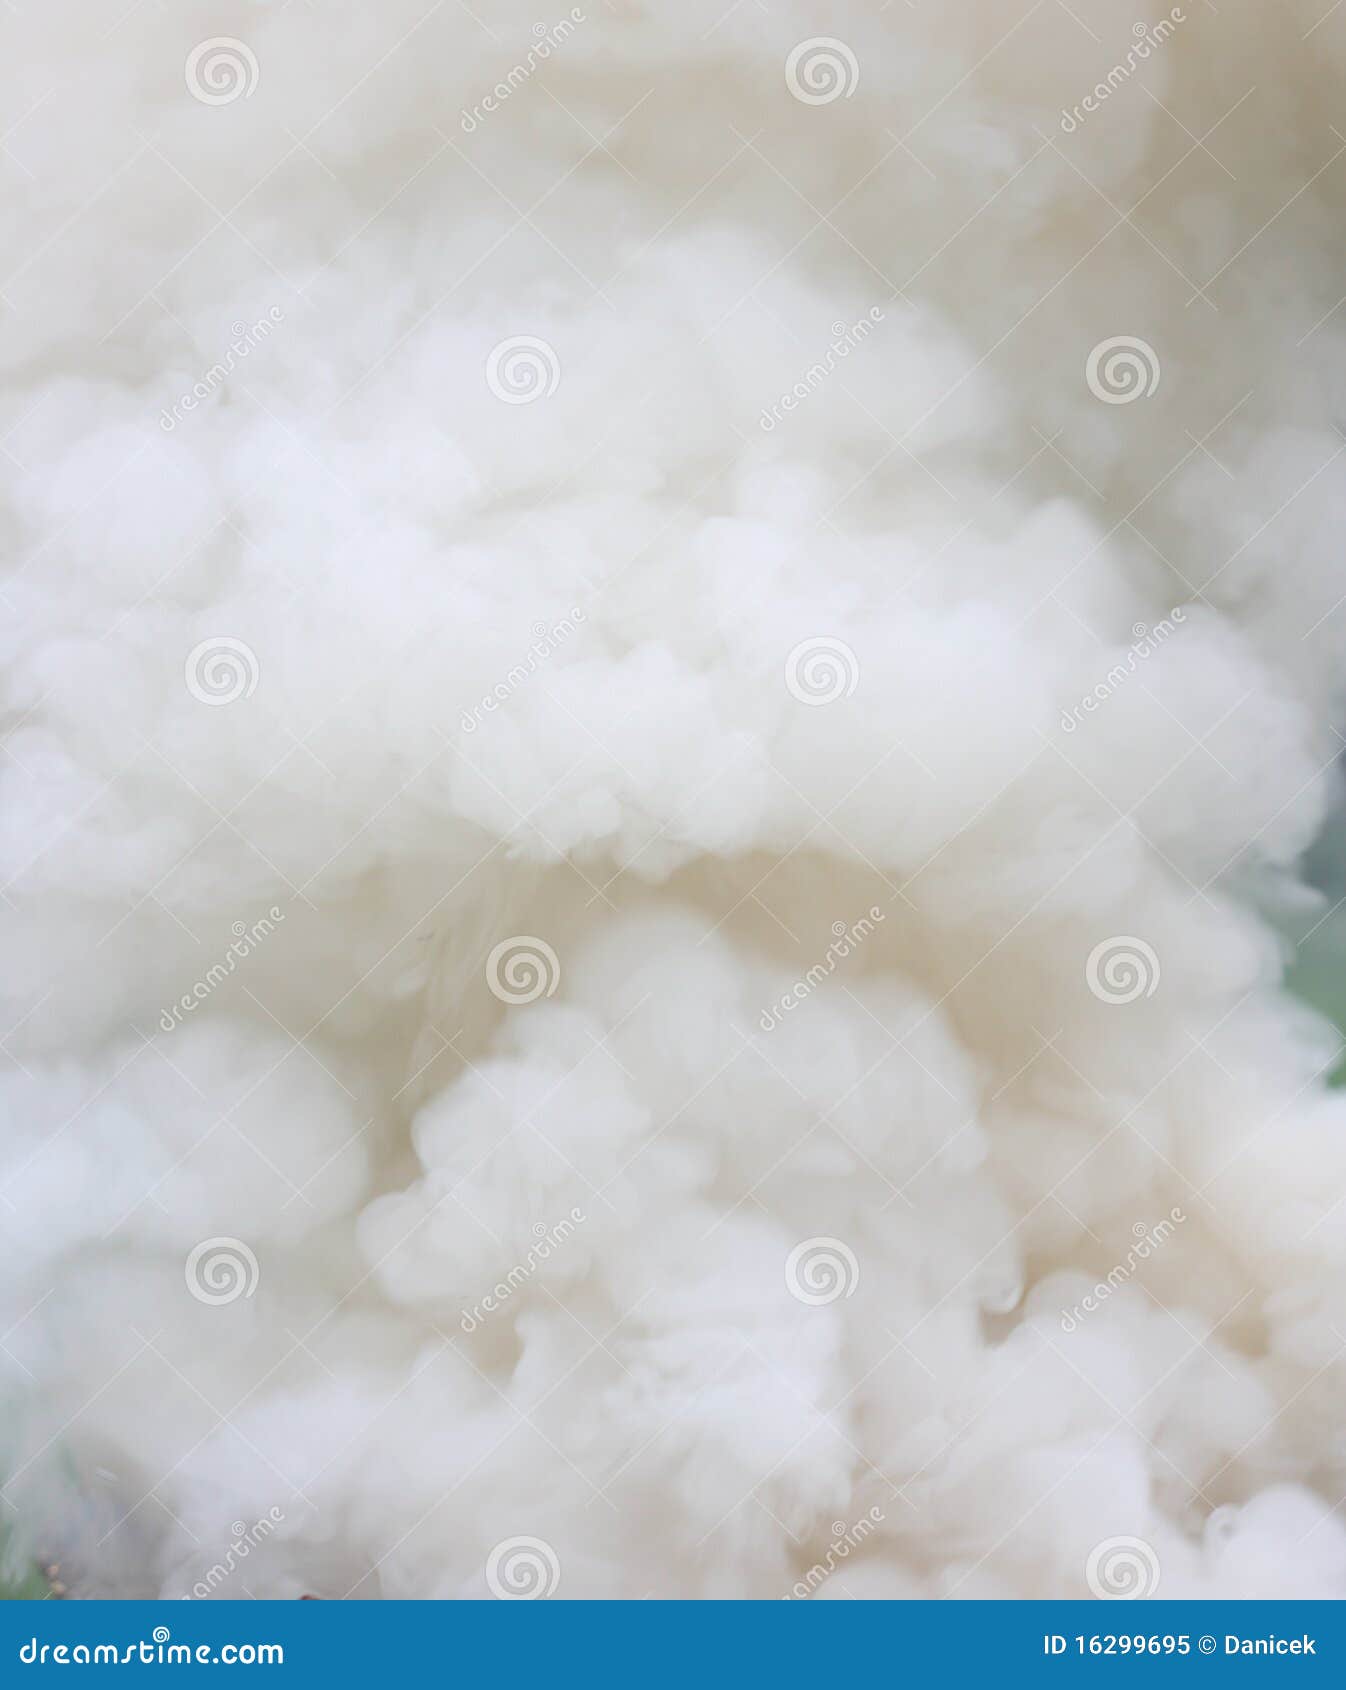 dense smoke